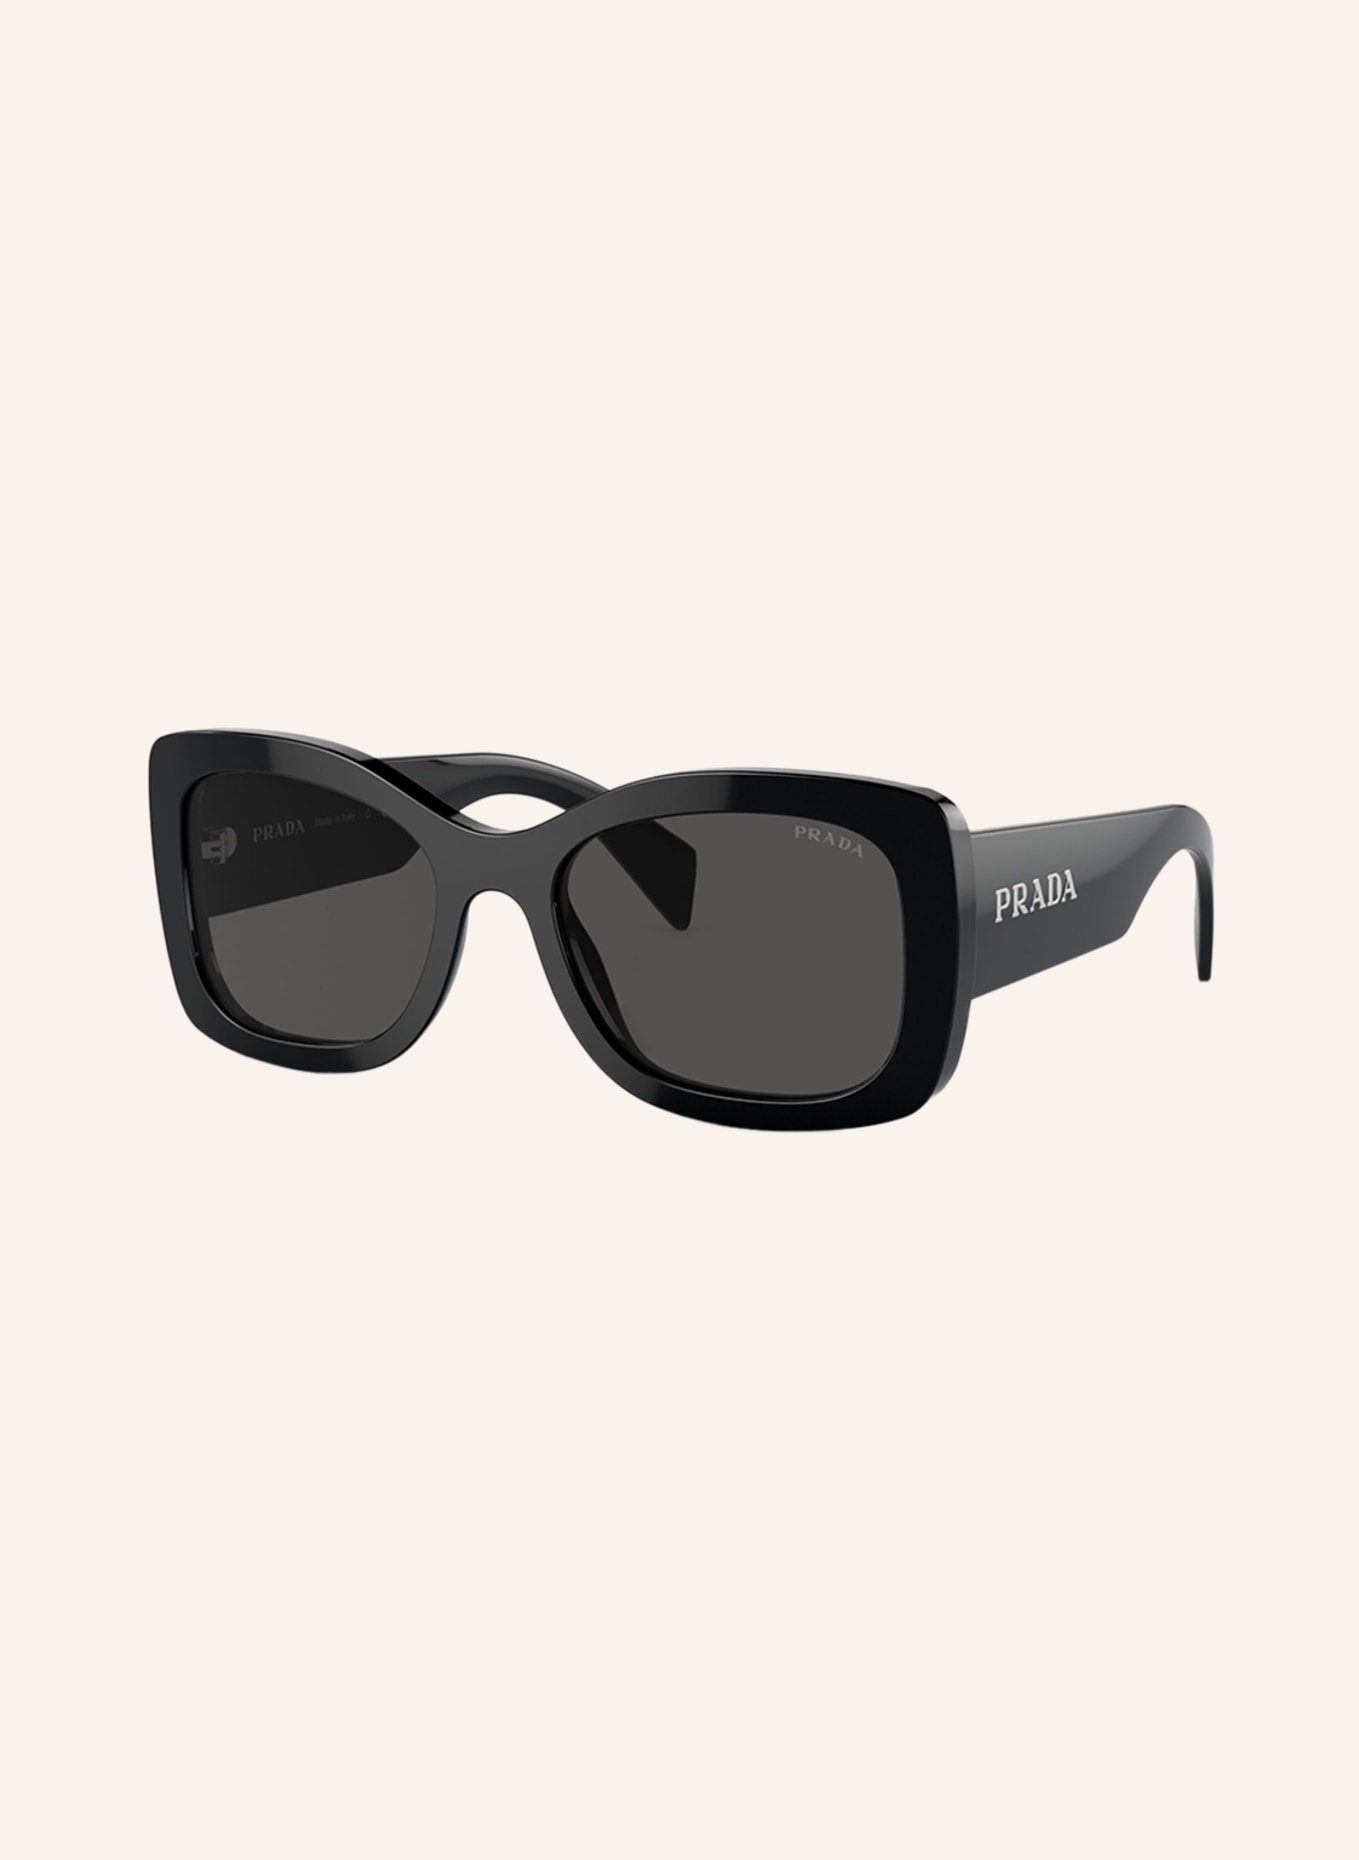 PRADA LINEA ROSSA Sunglasses PR A08S, Color: 1AB5S0 - BLACK/DARK GRAY (Image 1)